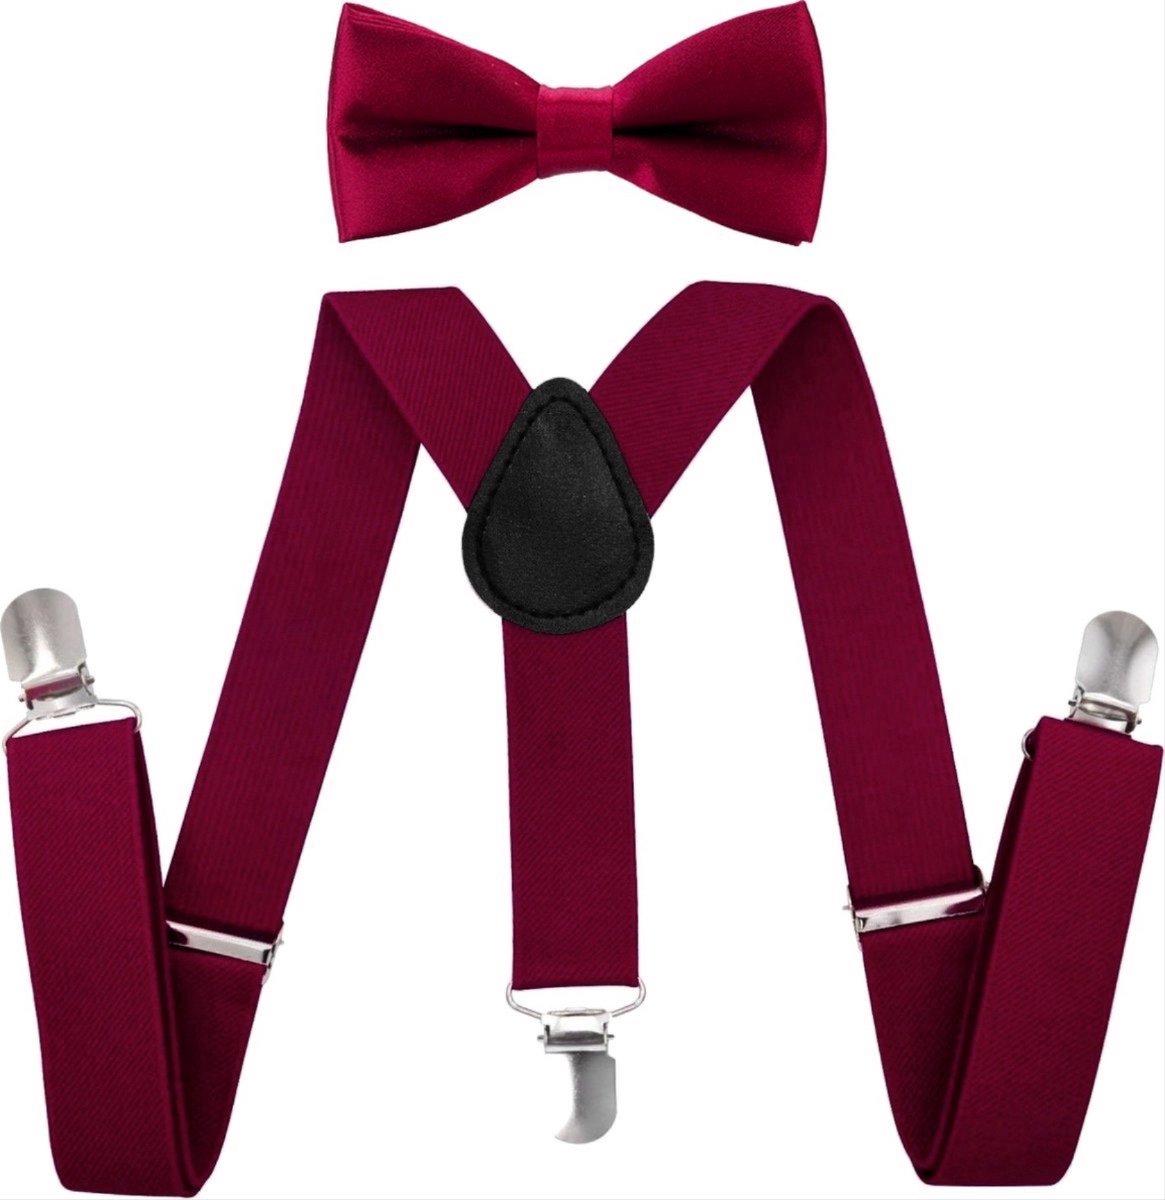 CHPN - Bretels - Bretels voor kinderen - Kinderbretels & Vlinderstrik - Bordeaux Rood - 1-4 jaar - Bretels - Speciaal voor kinderen - Kerst outfit